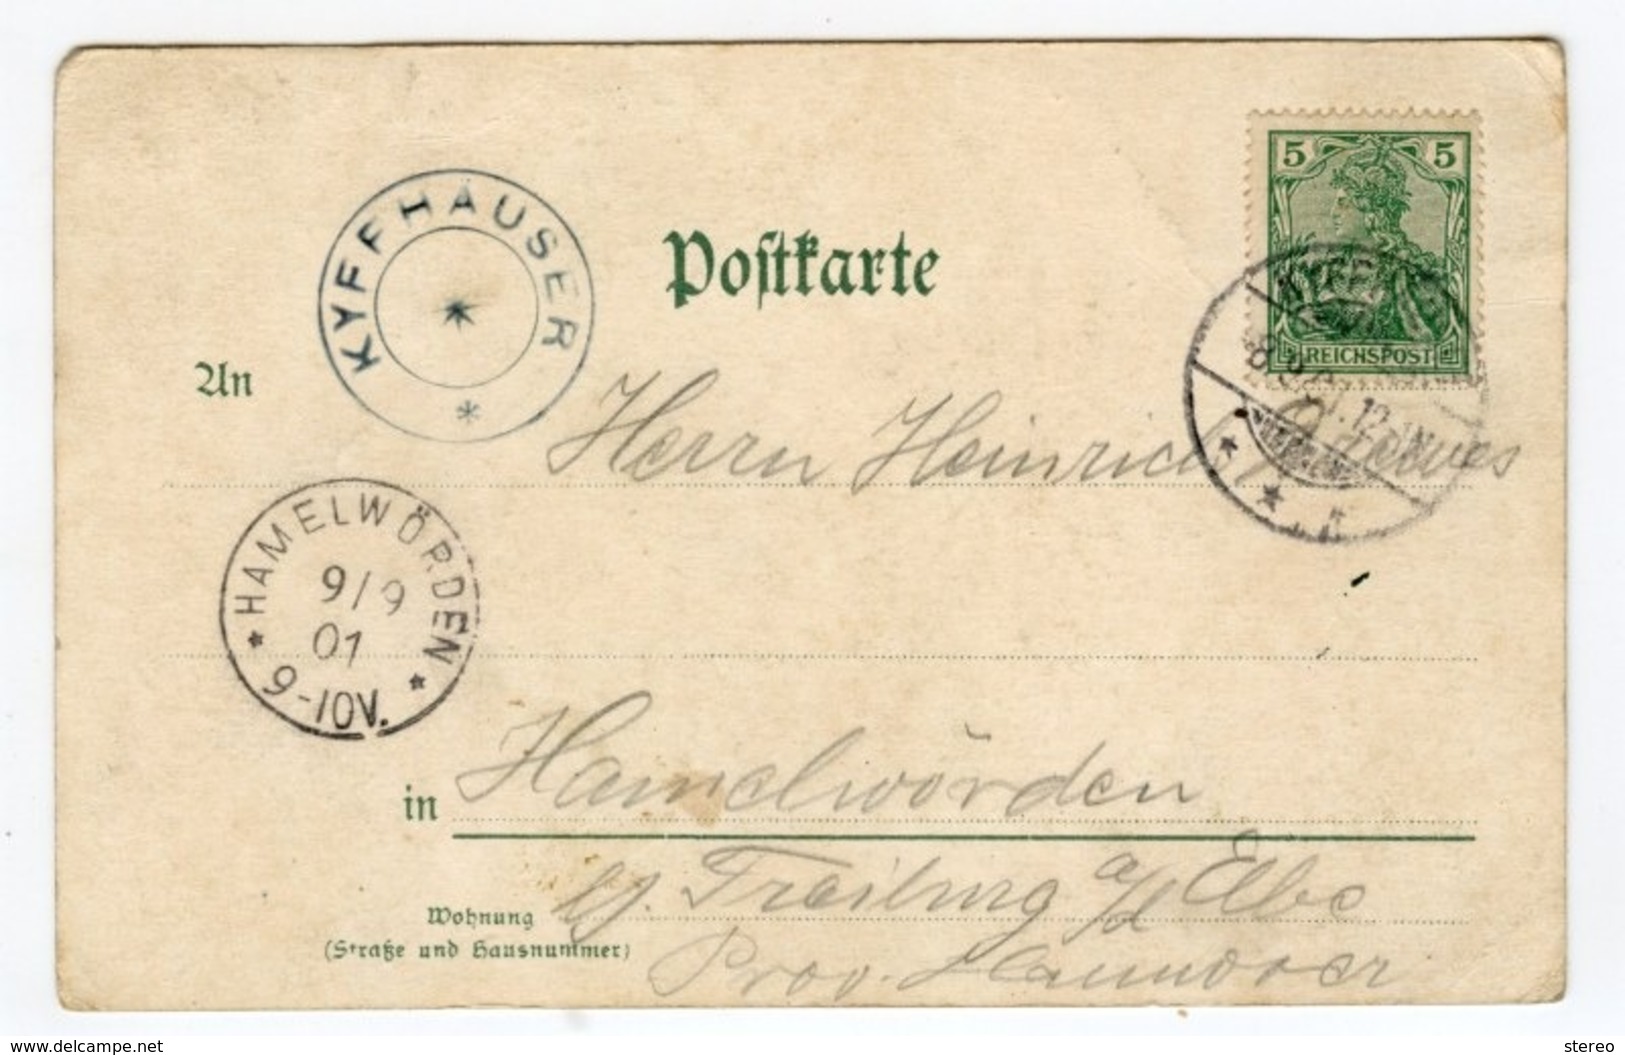 Kyffhäuser Postcard Germany Litho Gruss 1901 - Kyffhäuser